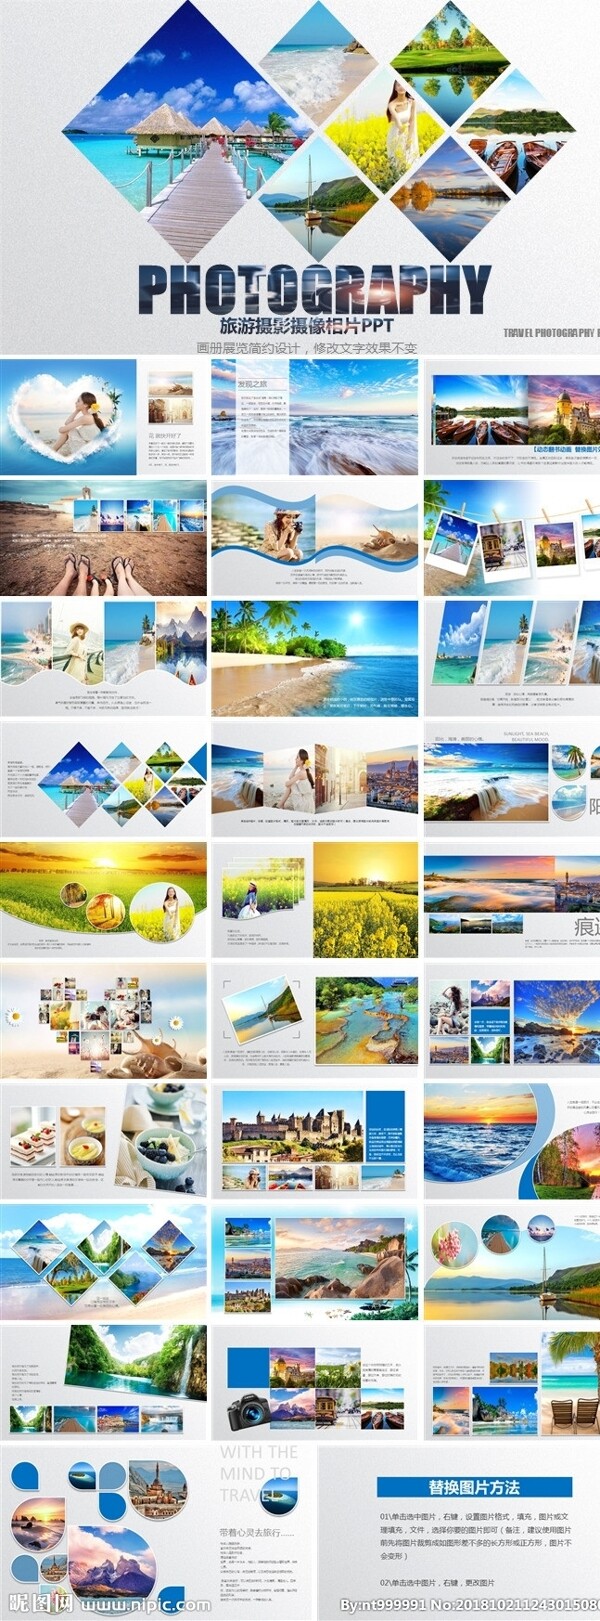 企业宣传画册电子相册旅游相册动